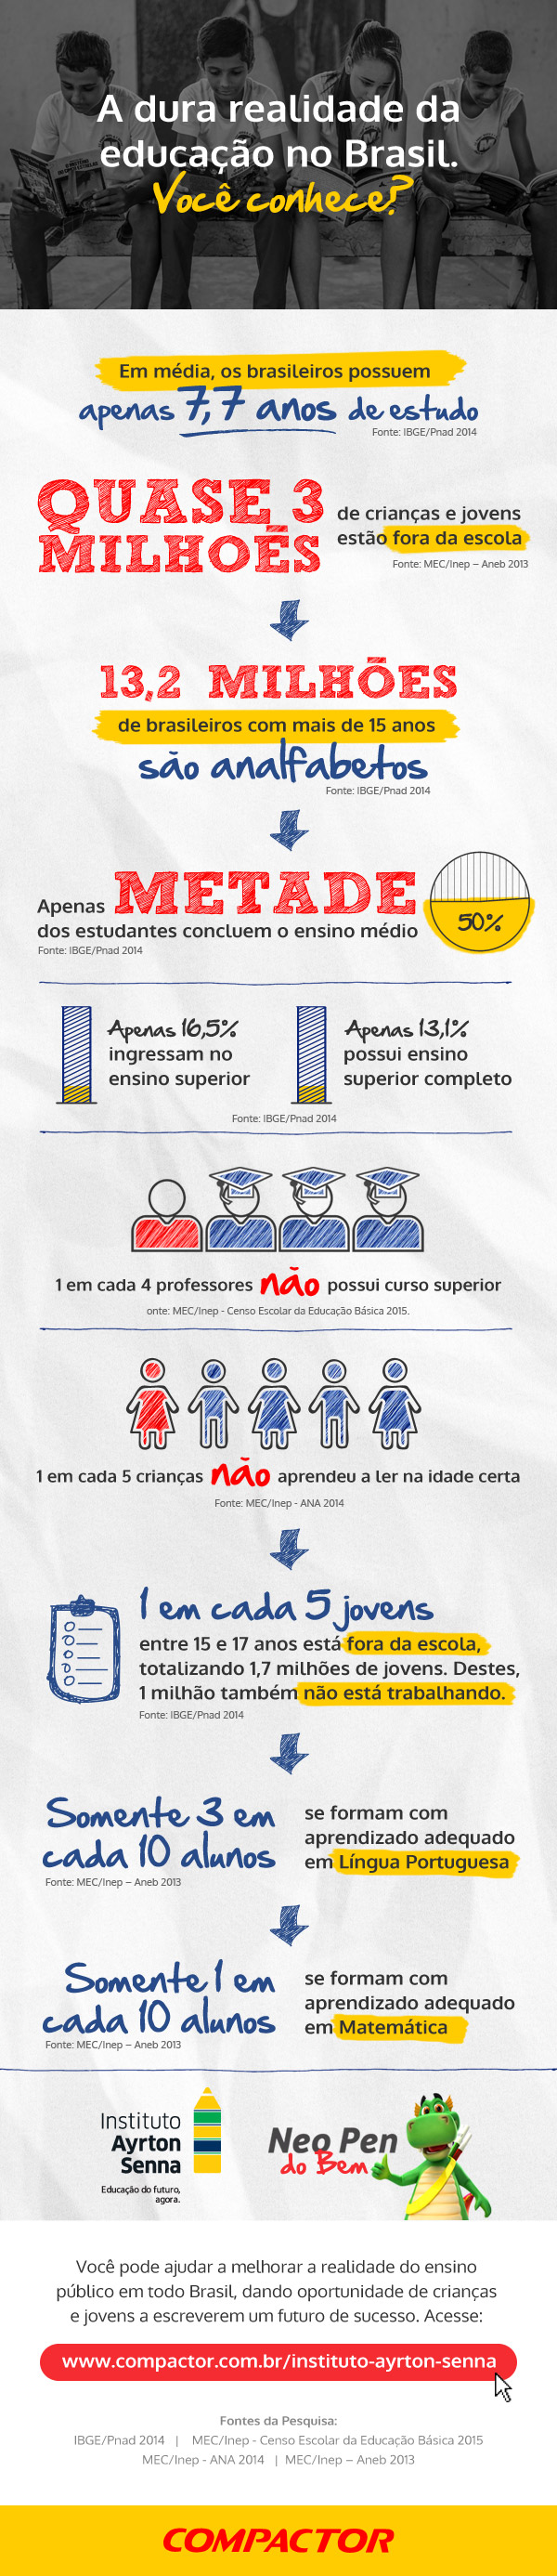 Infográfico: a dura realidade da educação no Brasil.